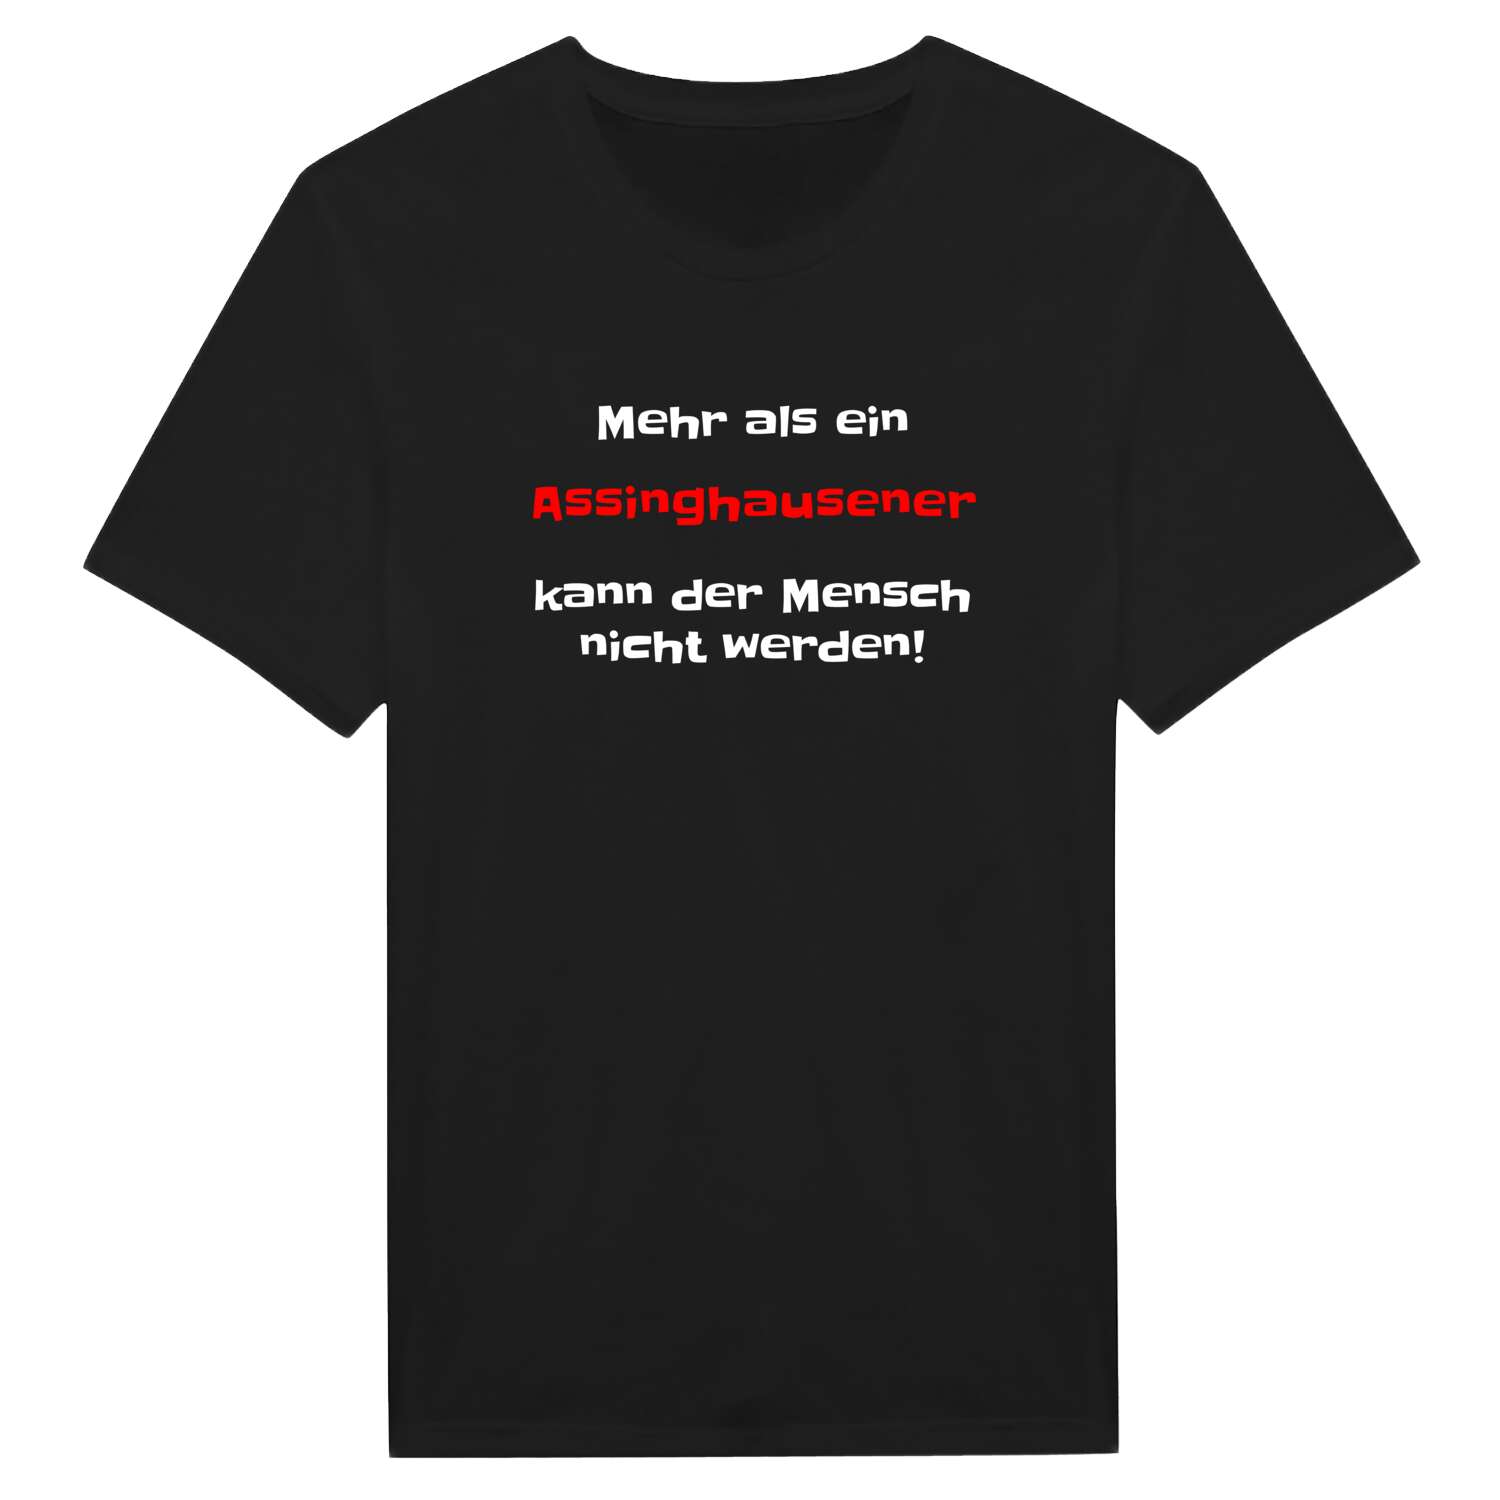 Assinghausen T-Shirt »Mehr als ein«